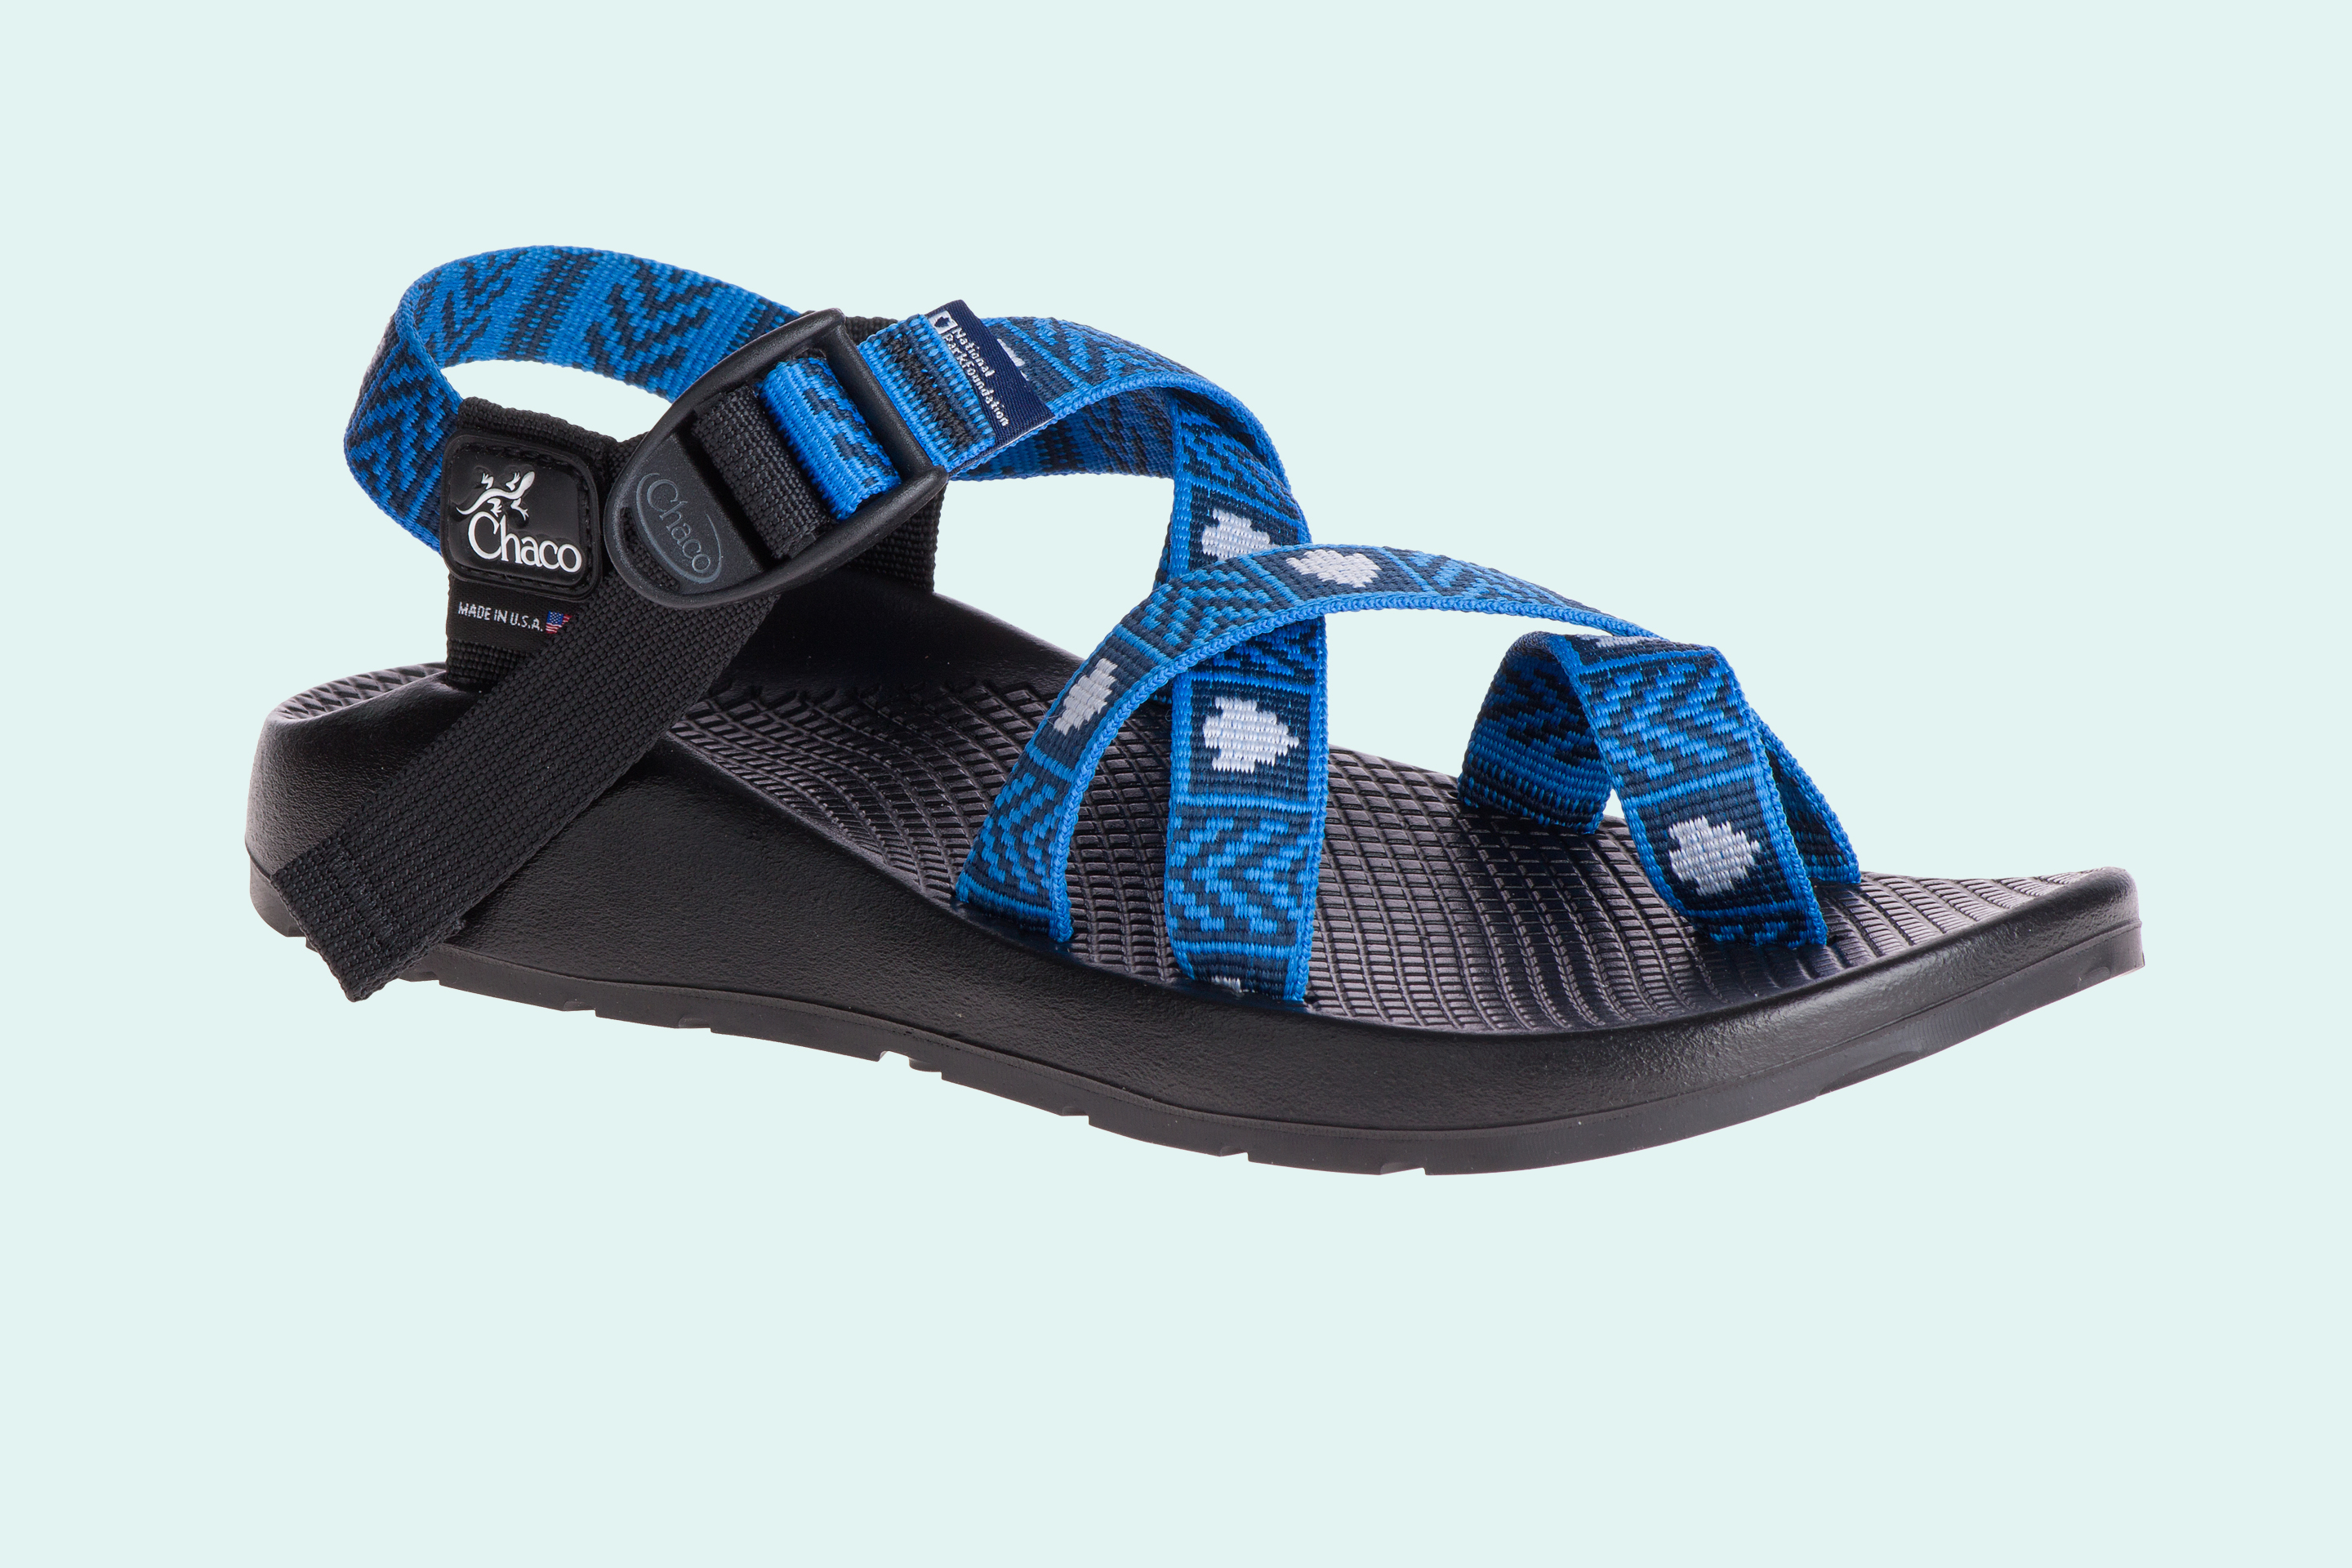 Chaco z/2 Colorado sandals ($130)